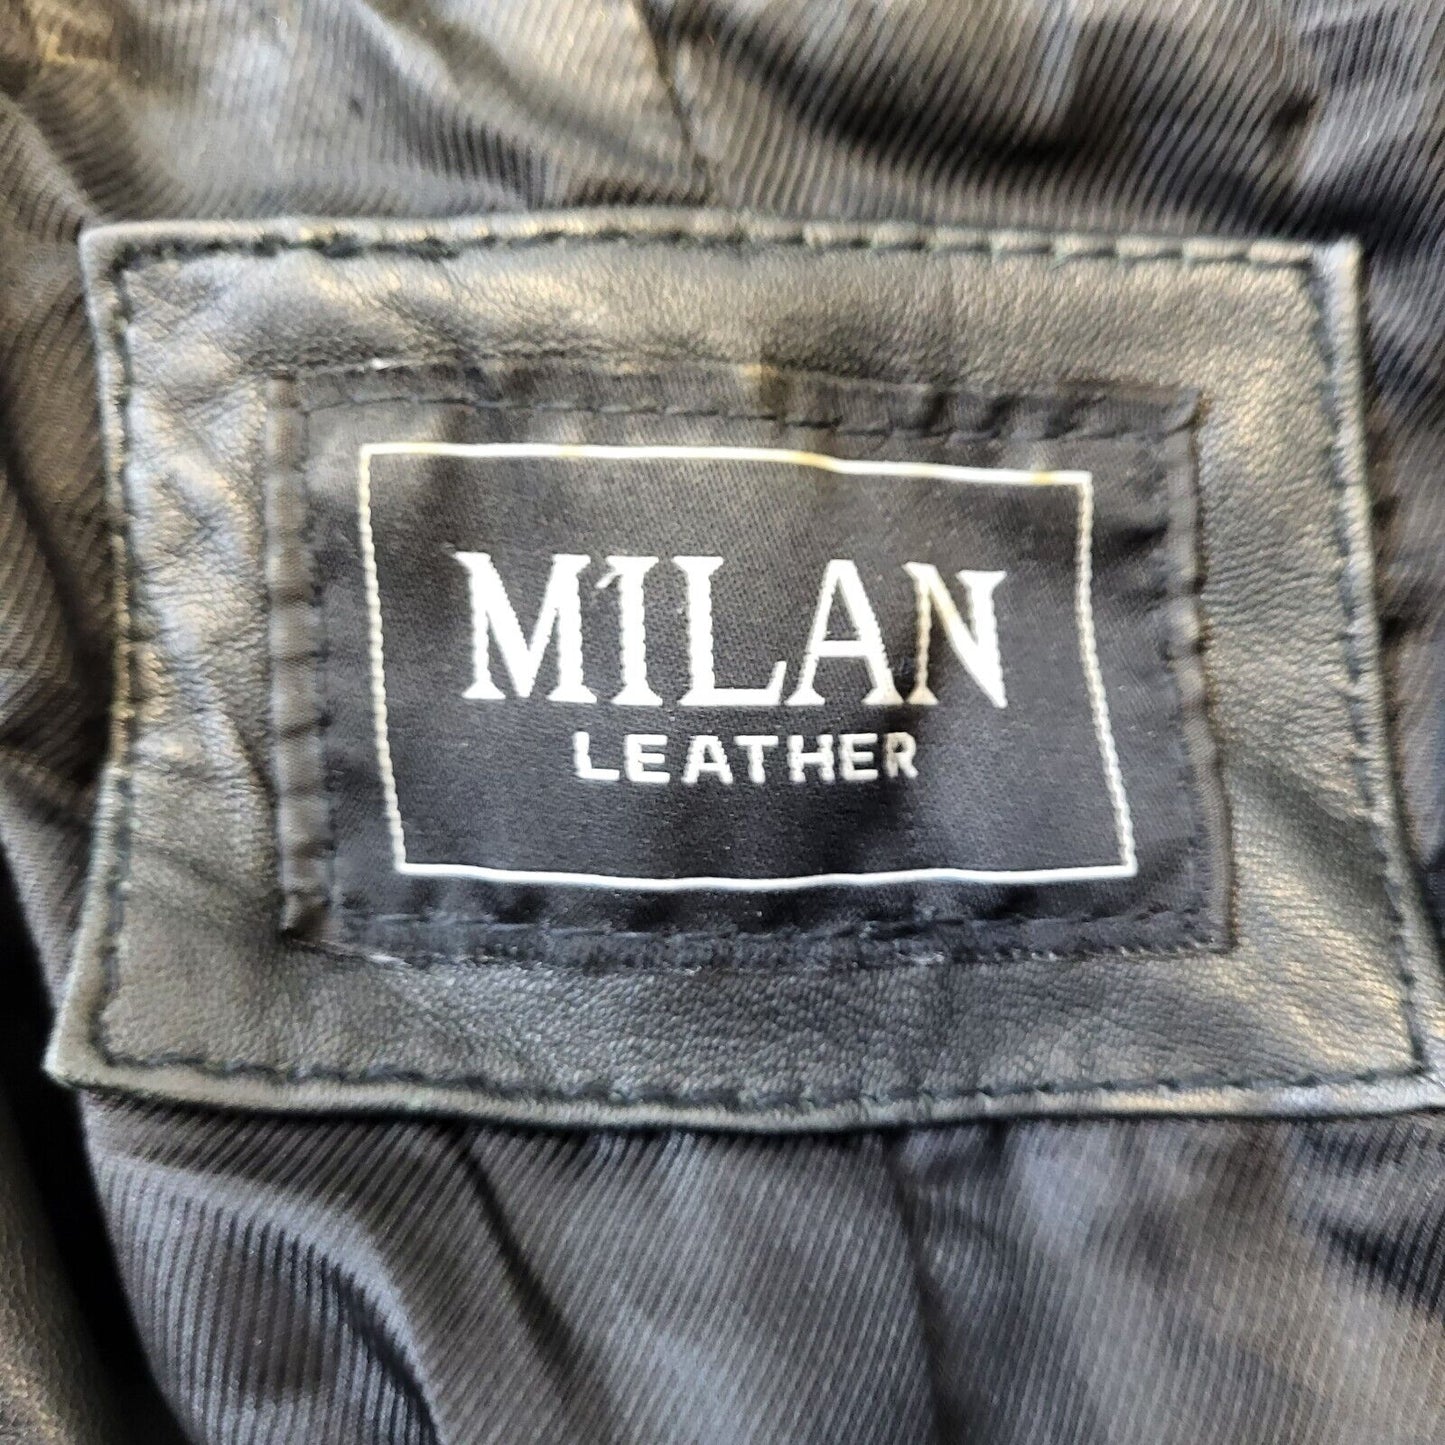 Milan Leather Jacket (10)